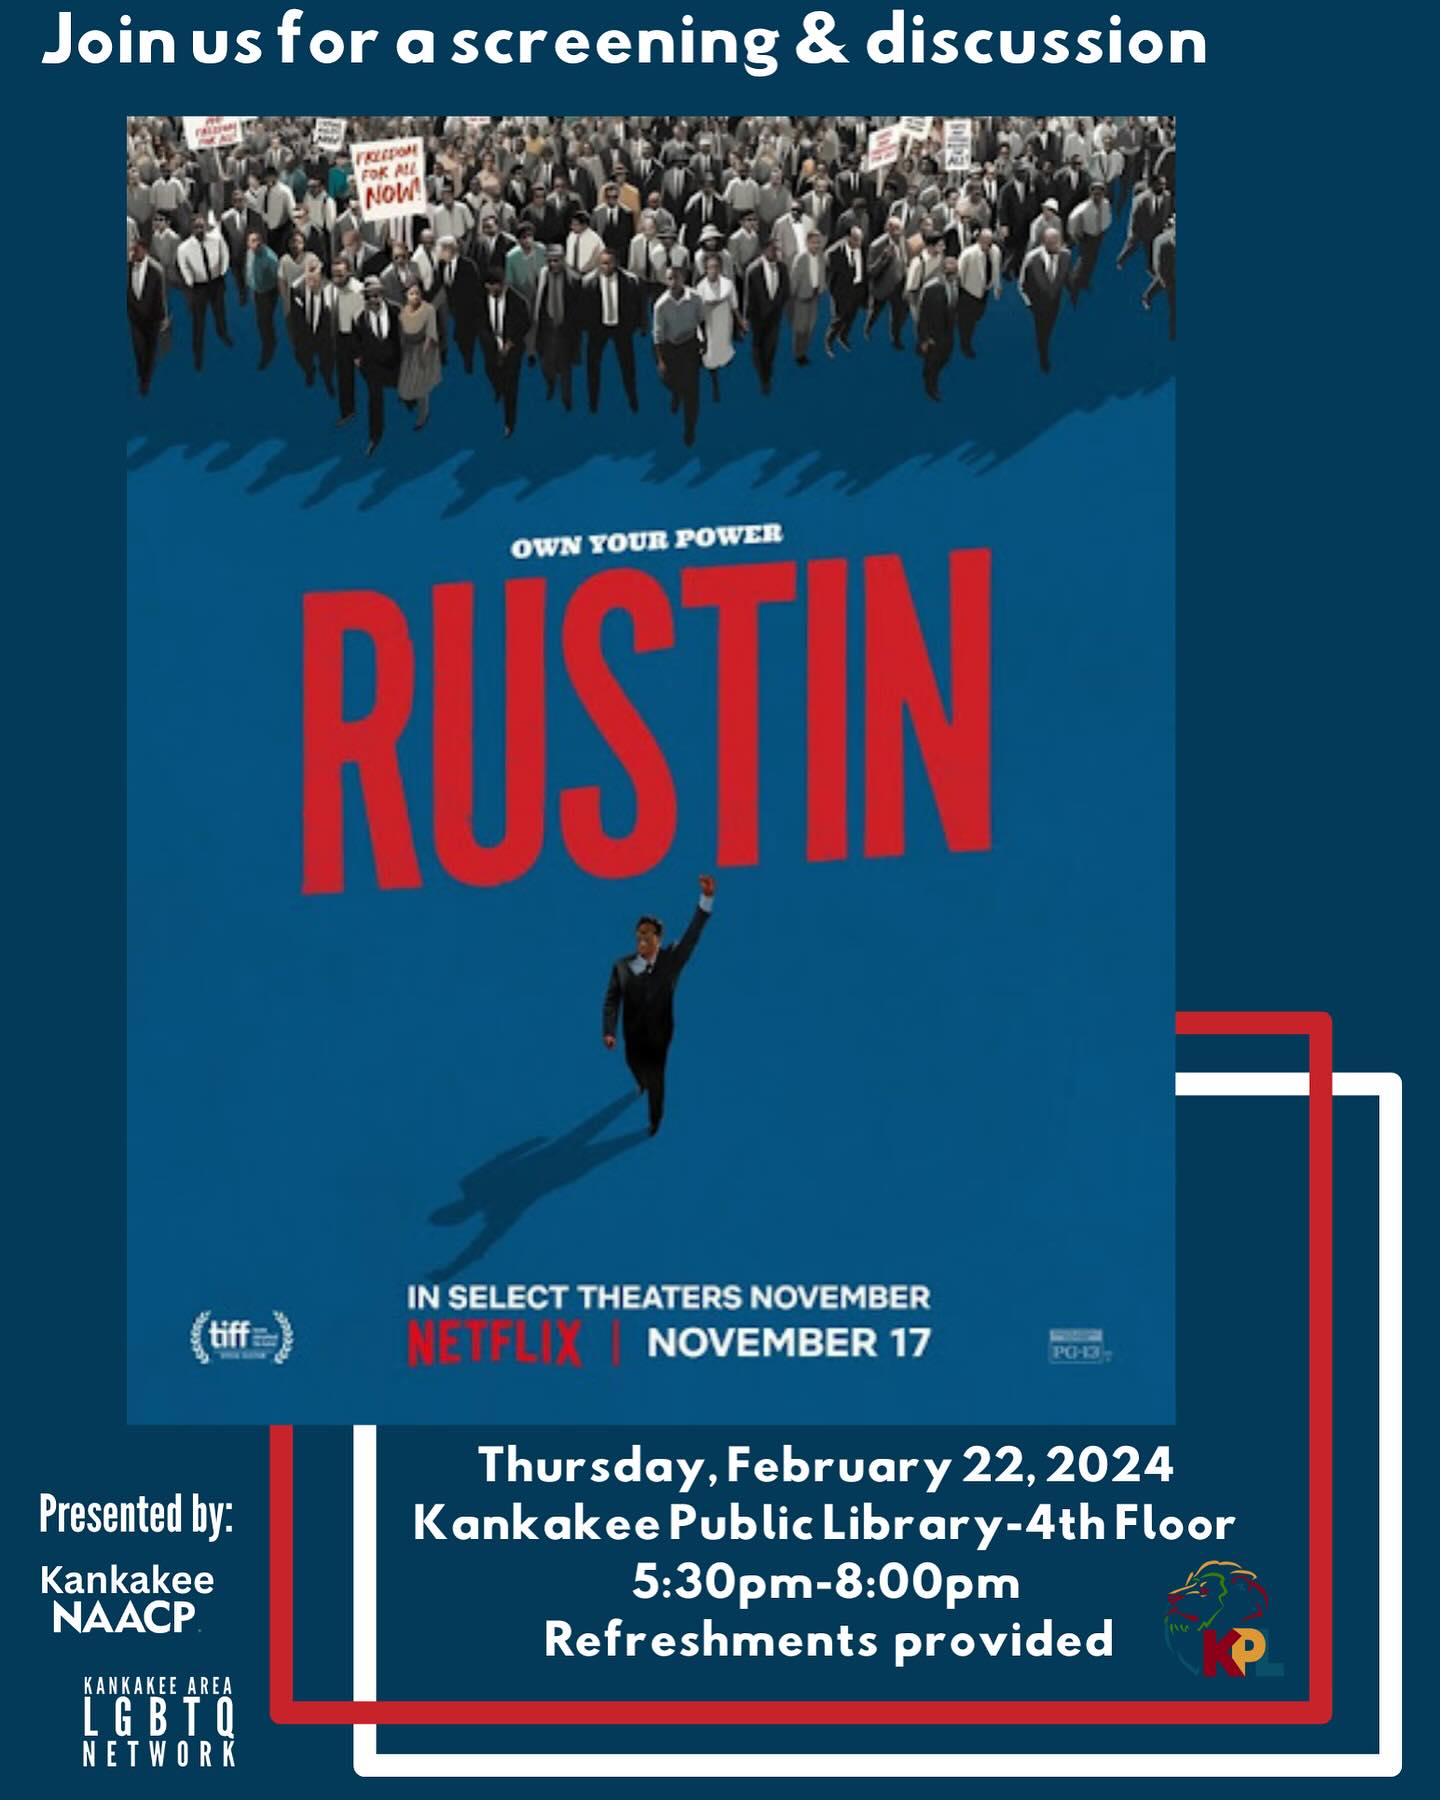 “Rustin” Screening